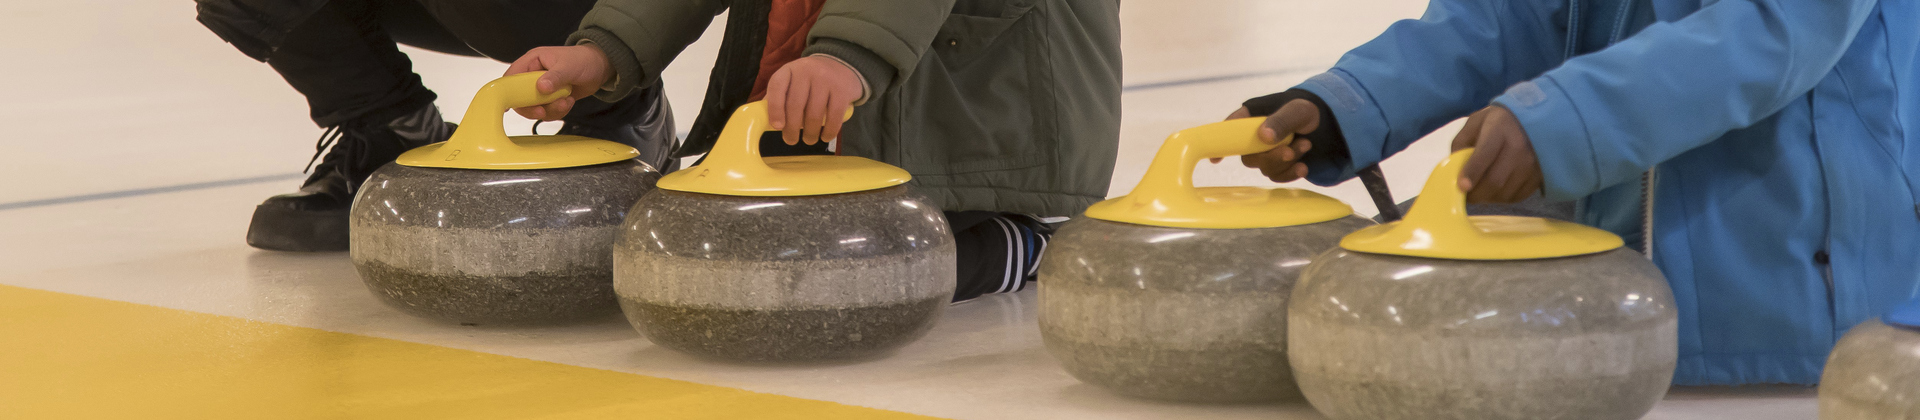 Barnhänder som håller curlingklot på en curlingbana